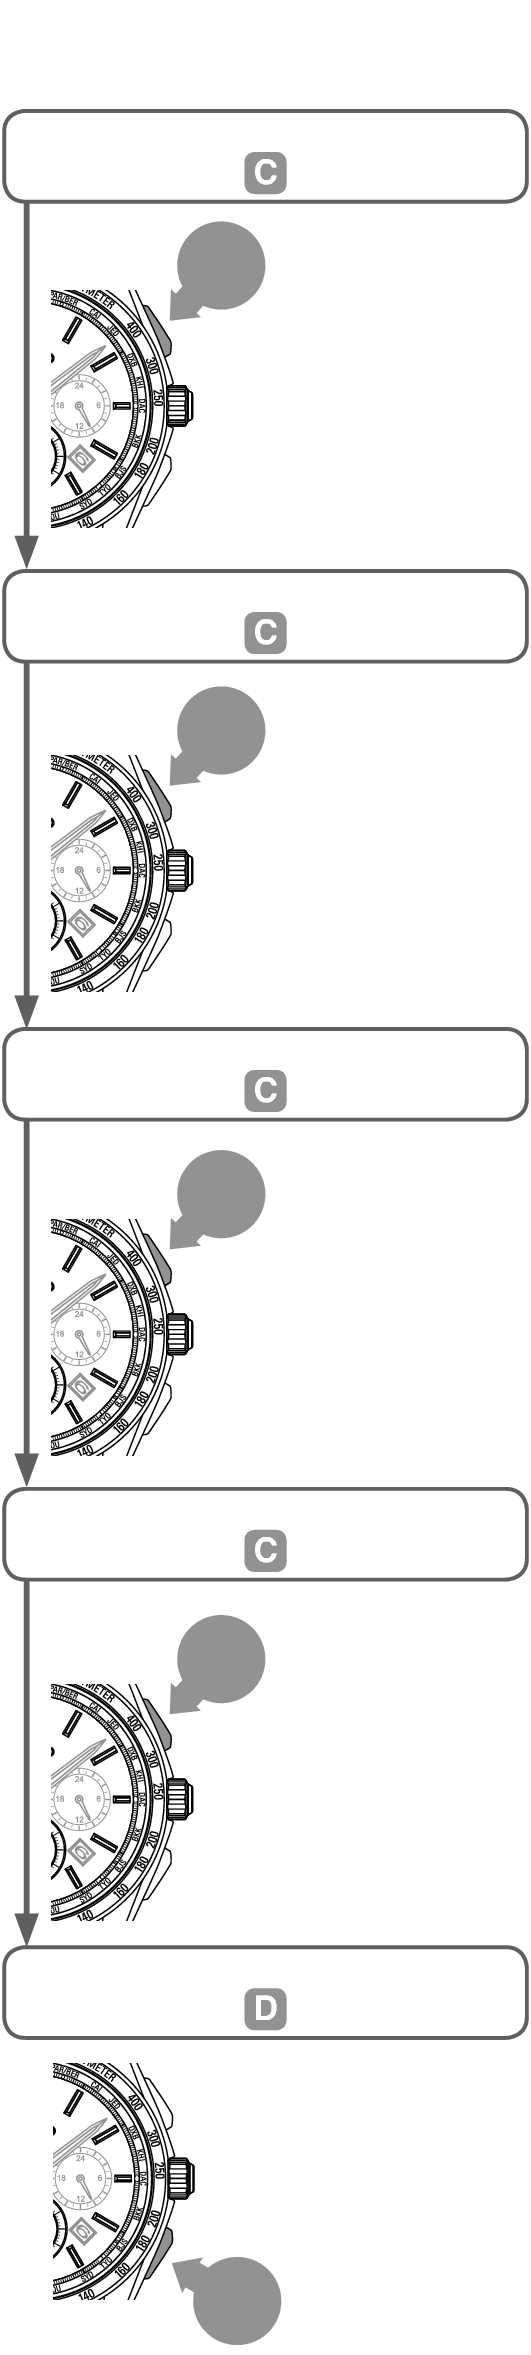 8B92_Stopwatch Ex-2 V + Stopwatch Ex-2 V